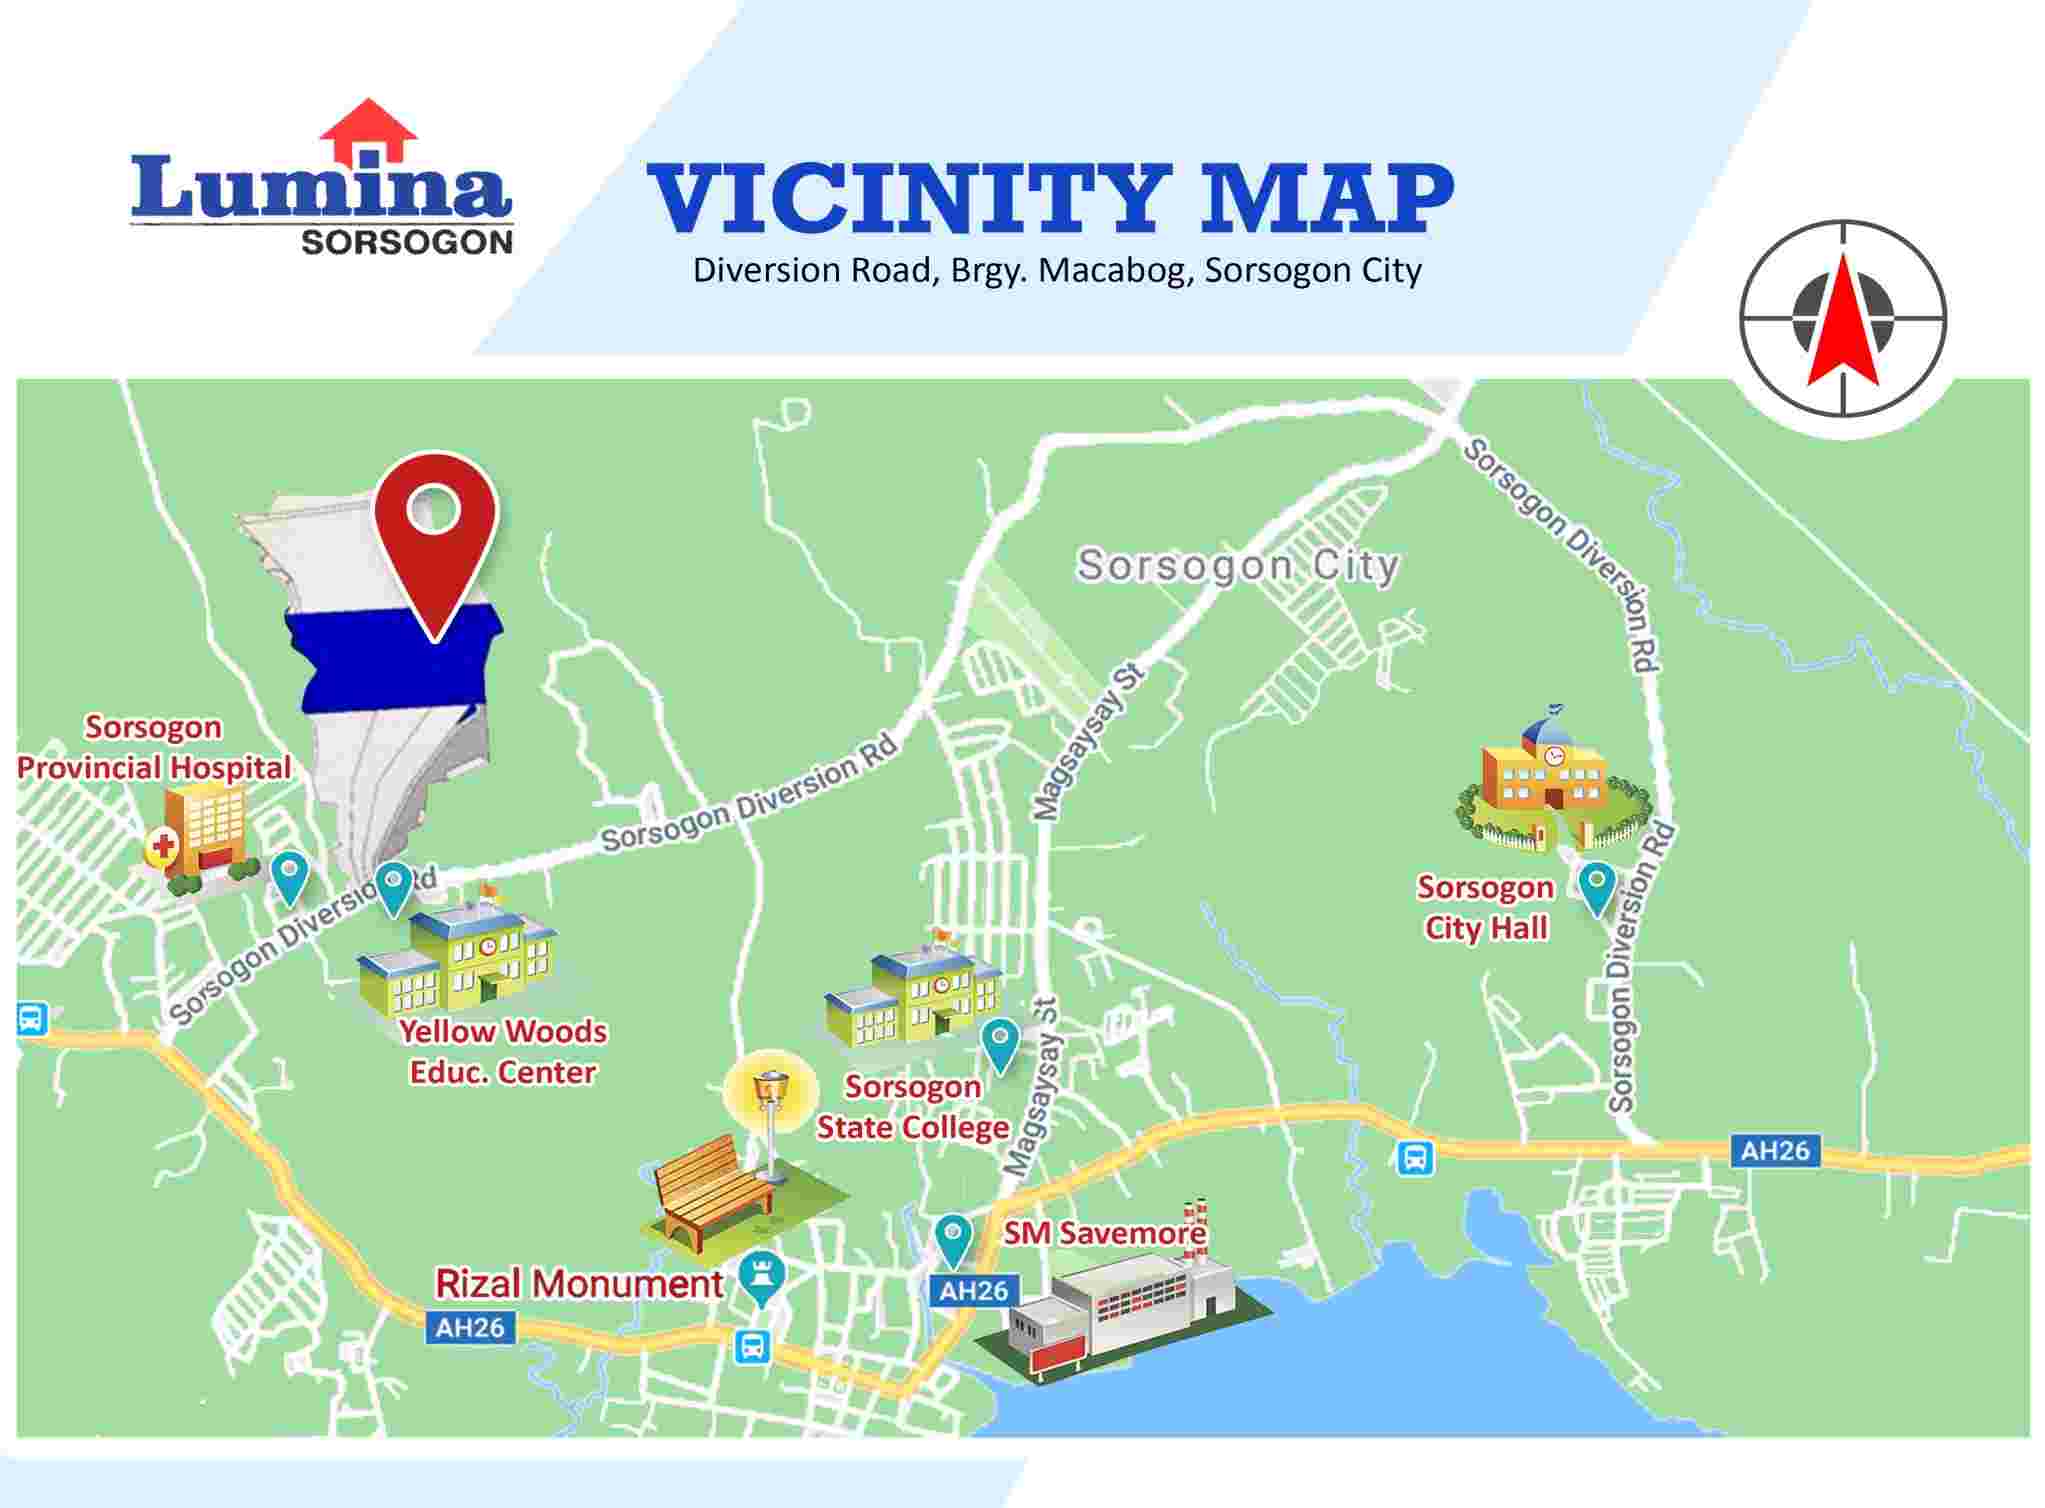 Vicinity-Map-1636442039.jpeg